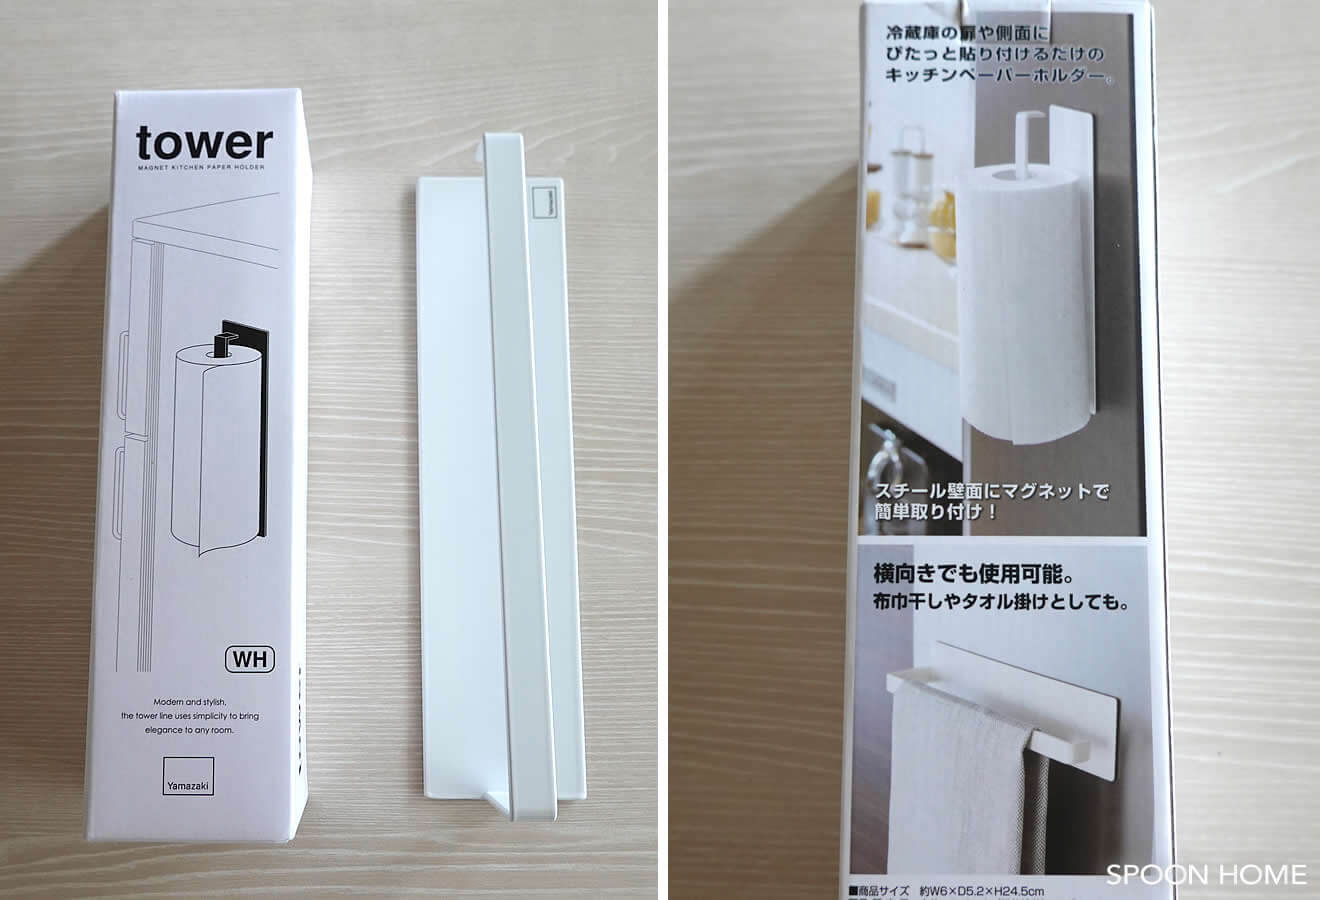 山崎実業・towerの「マグネット キッチンペーパーホルダー」のブログ画像